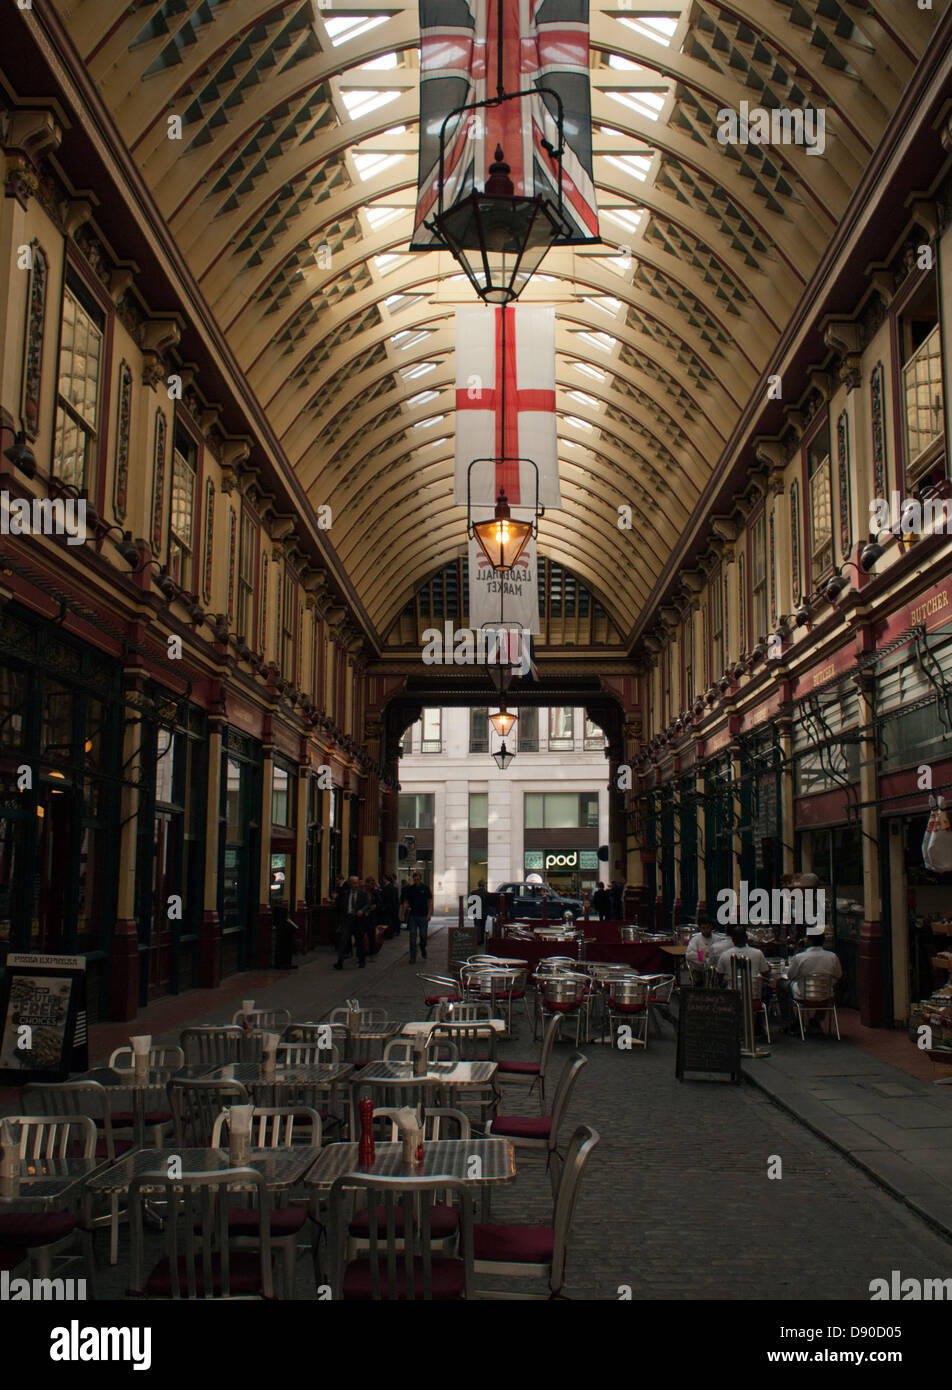 Leadenhall Market, City of London, England Stock Photo